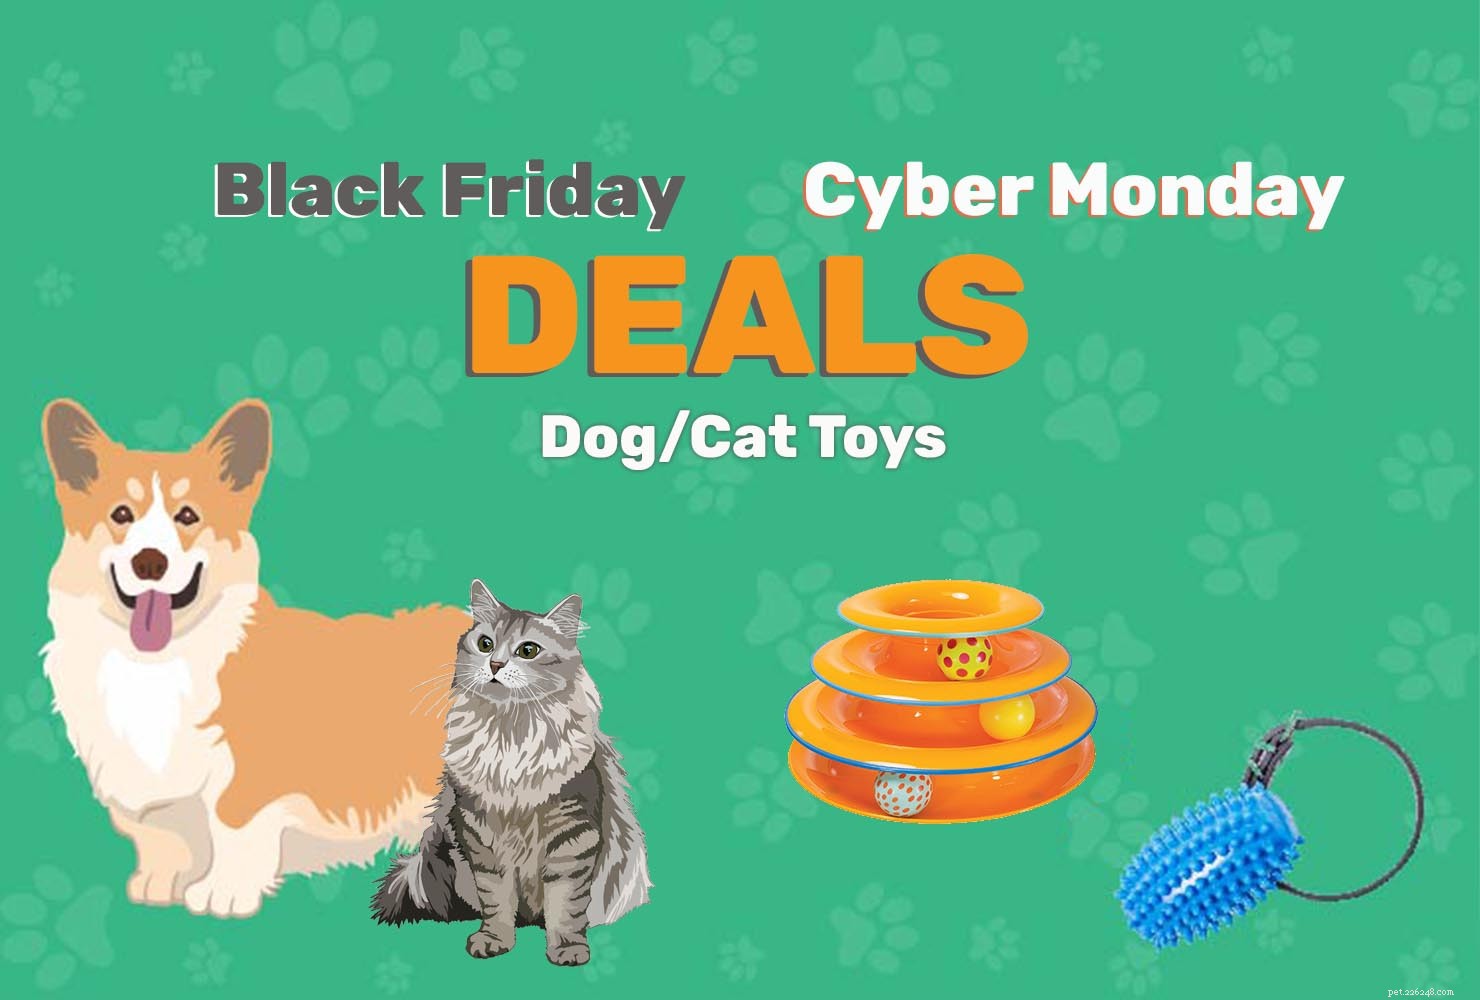 검은 금요일/사이버 먼데이 애완동물 거래 및 판매 2022:개 장난감 및 고양이 장난감